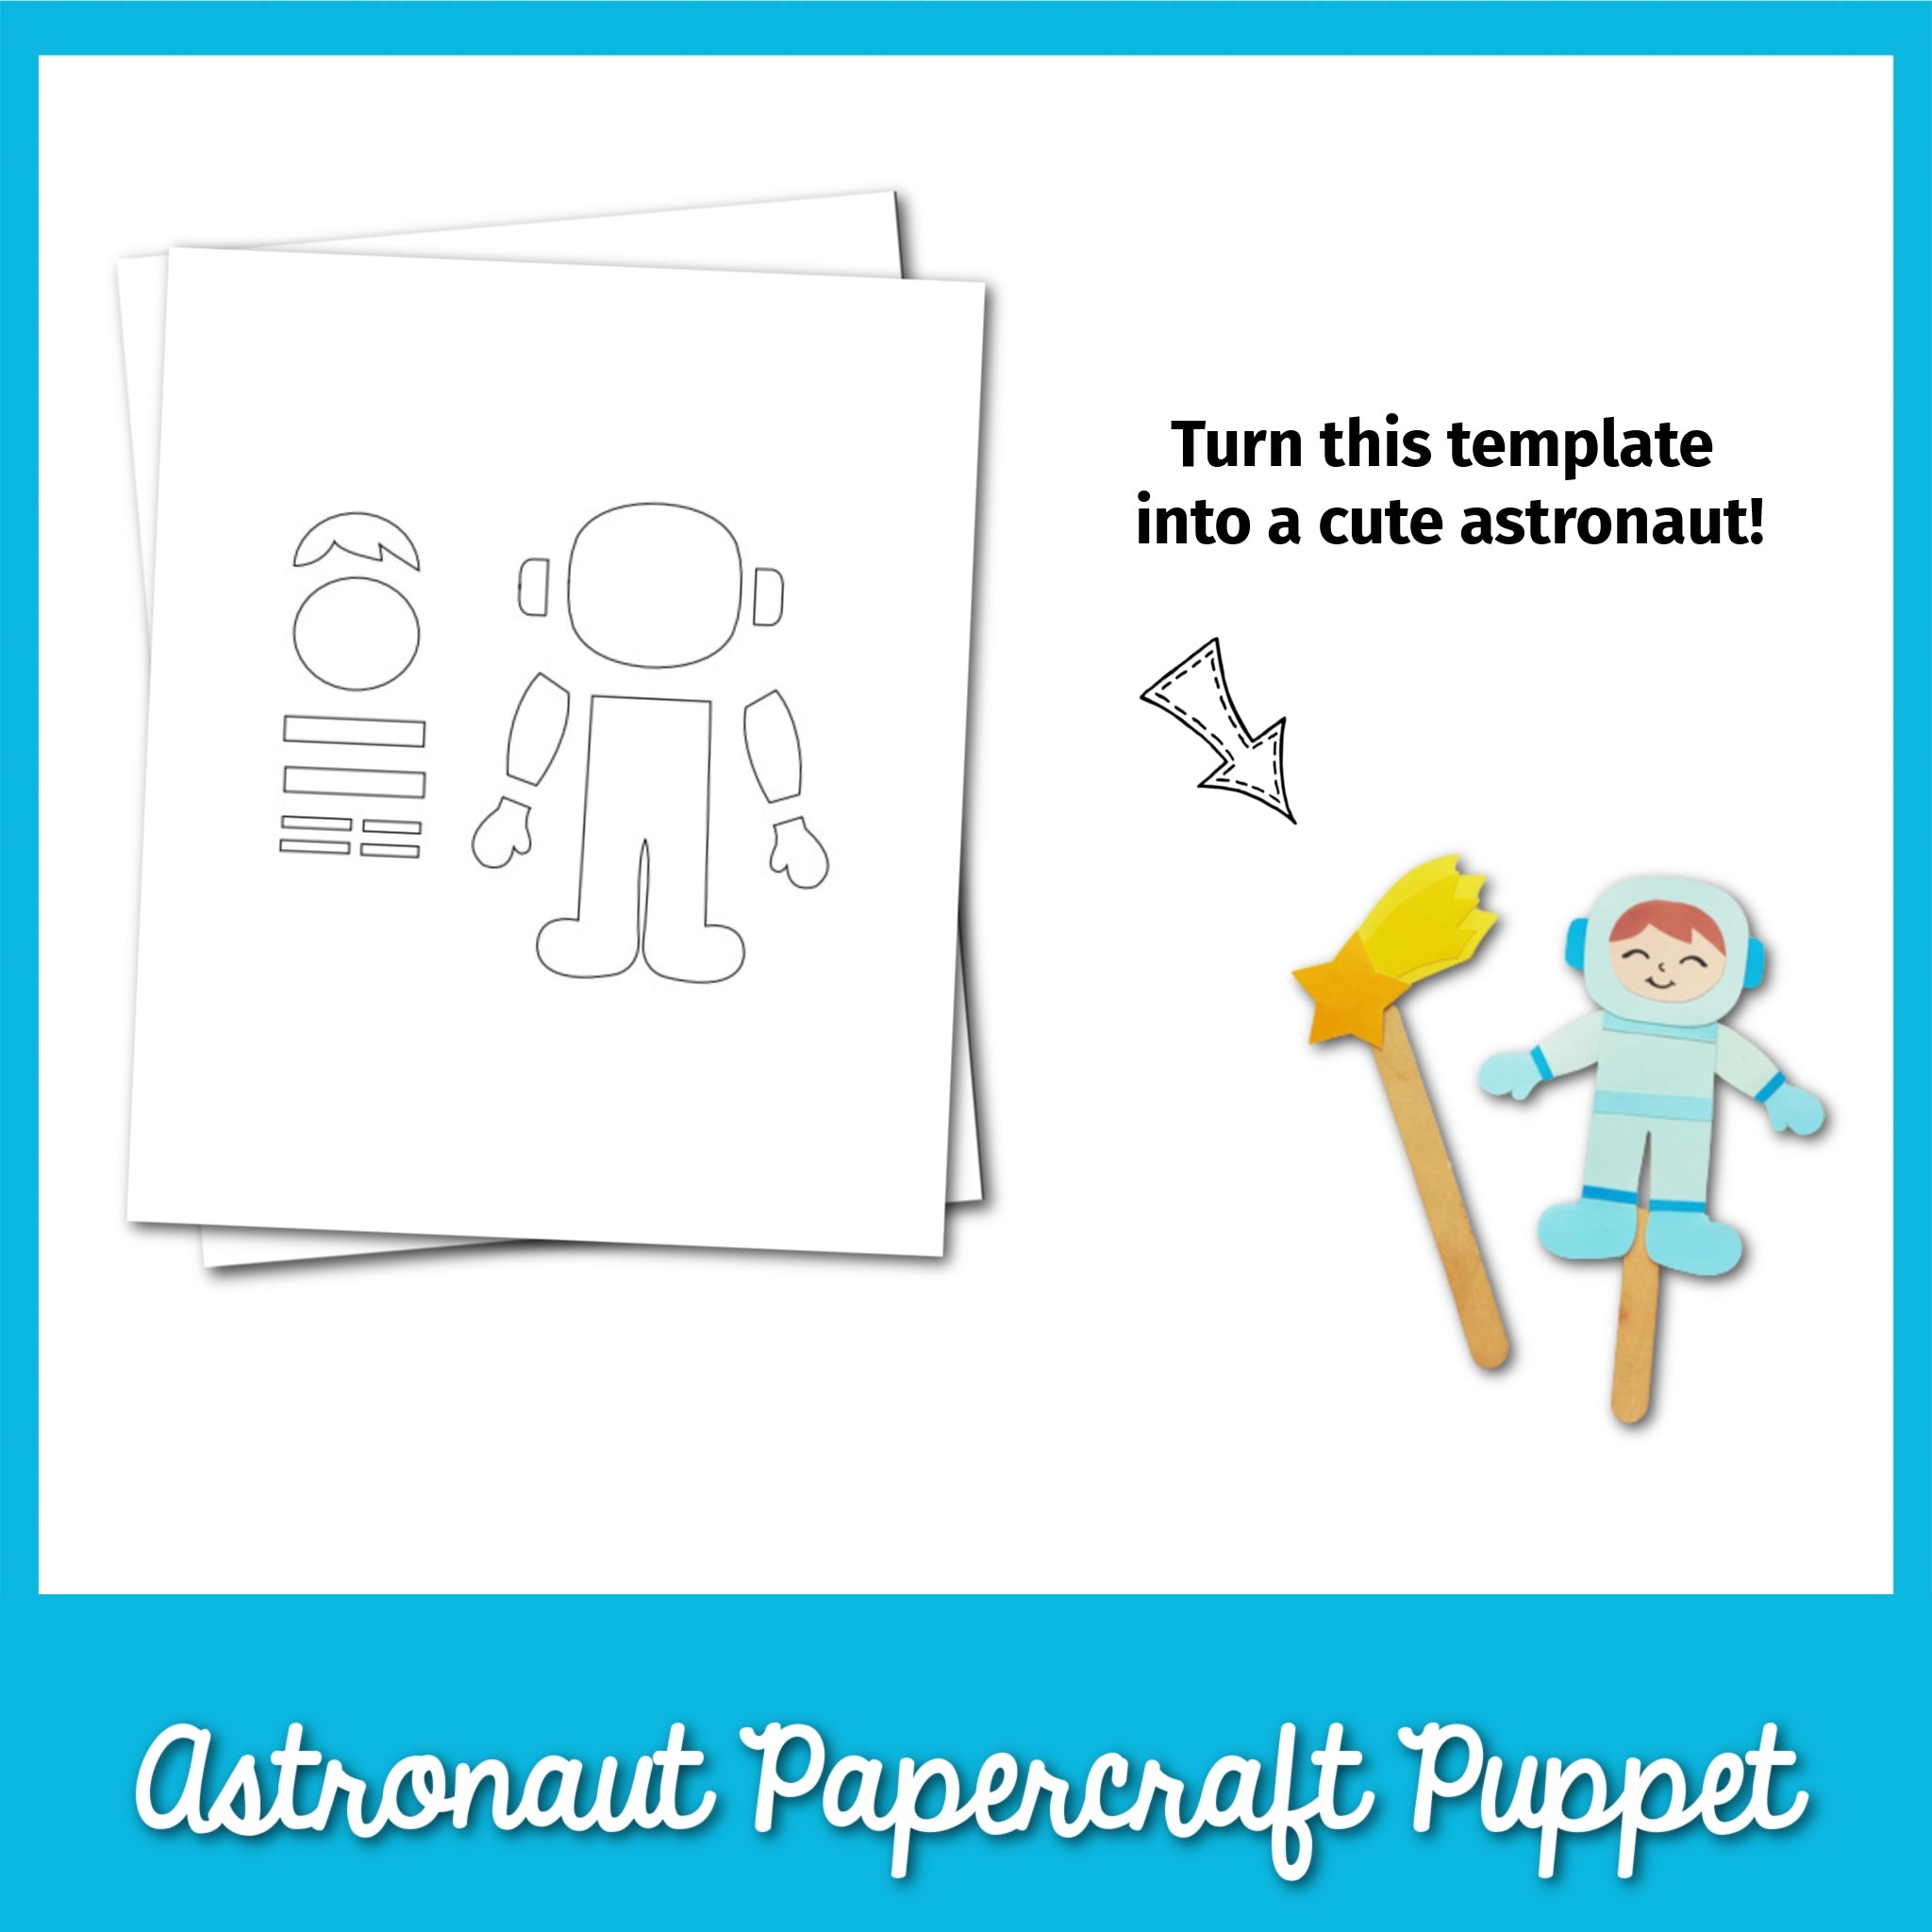 Astronaut Papercraft Puppet Template